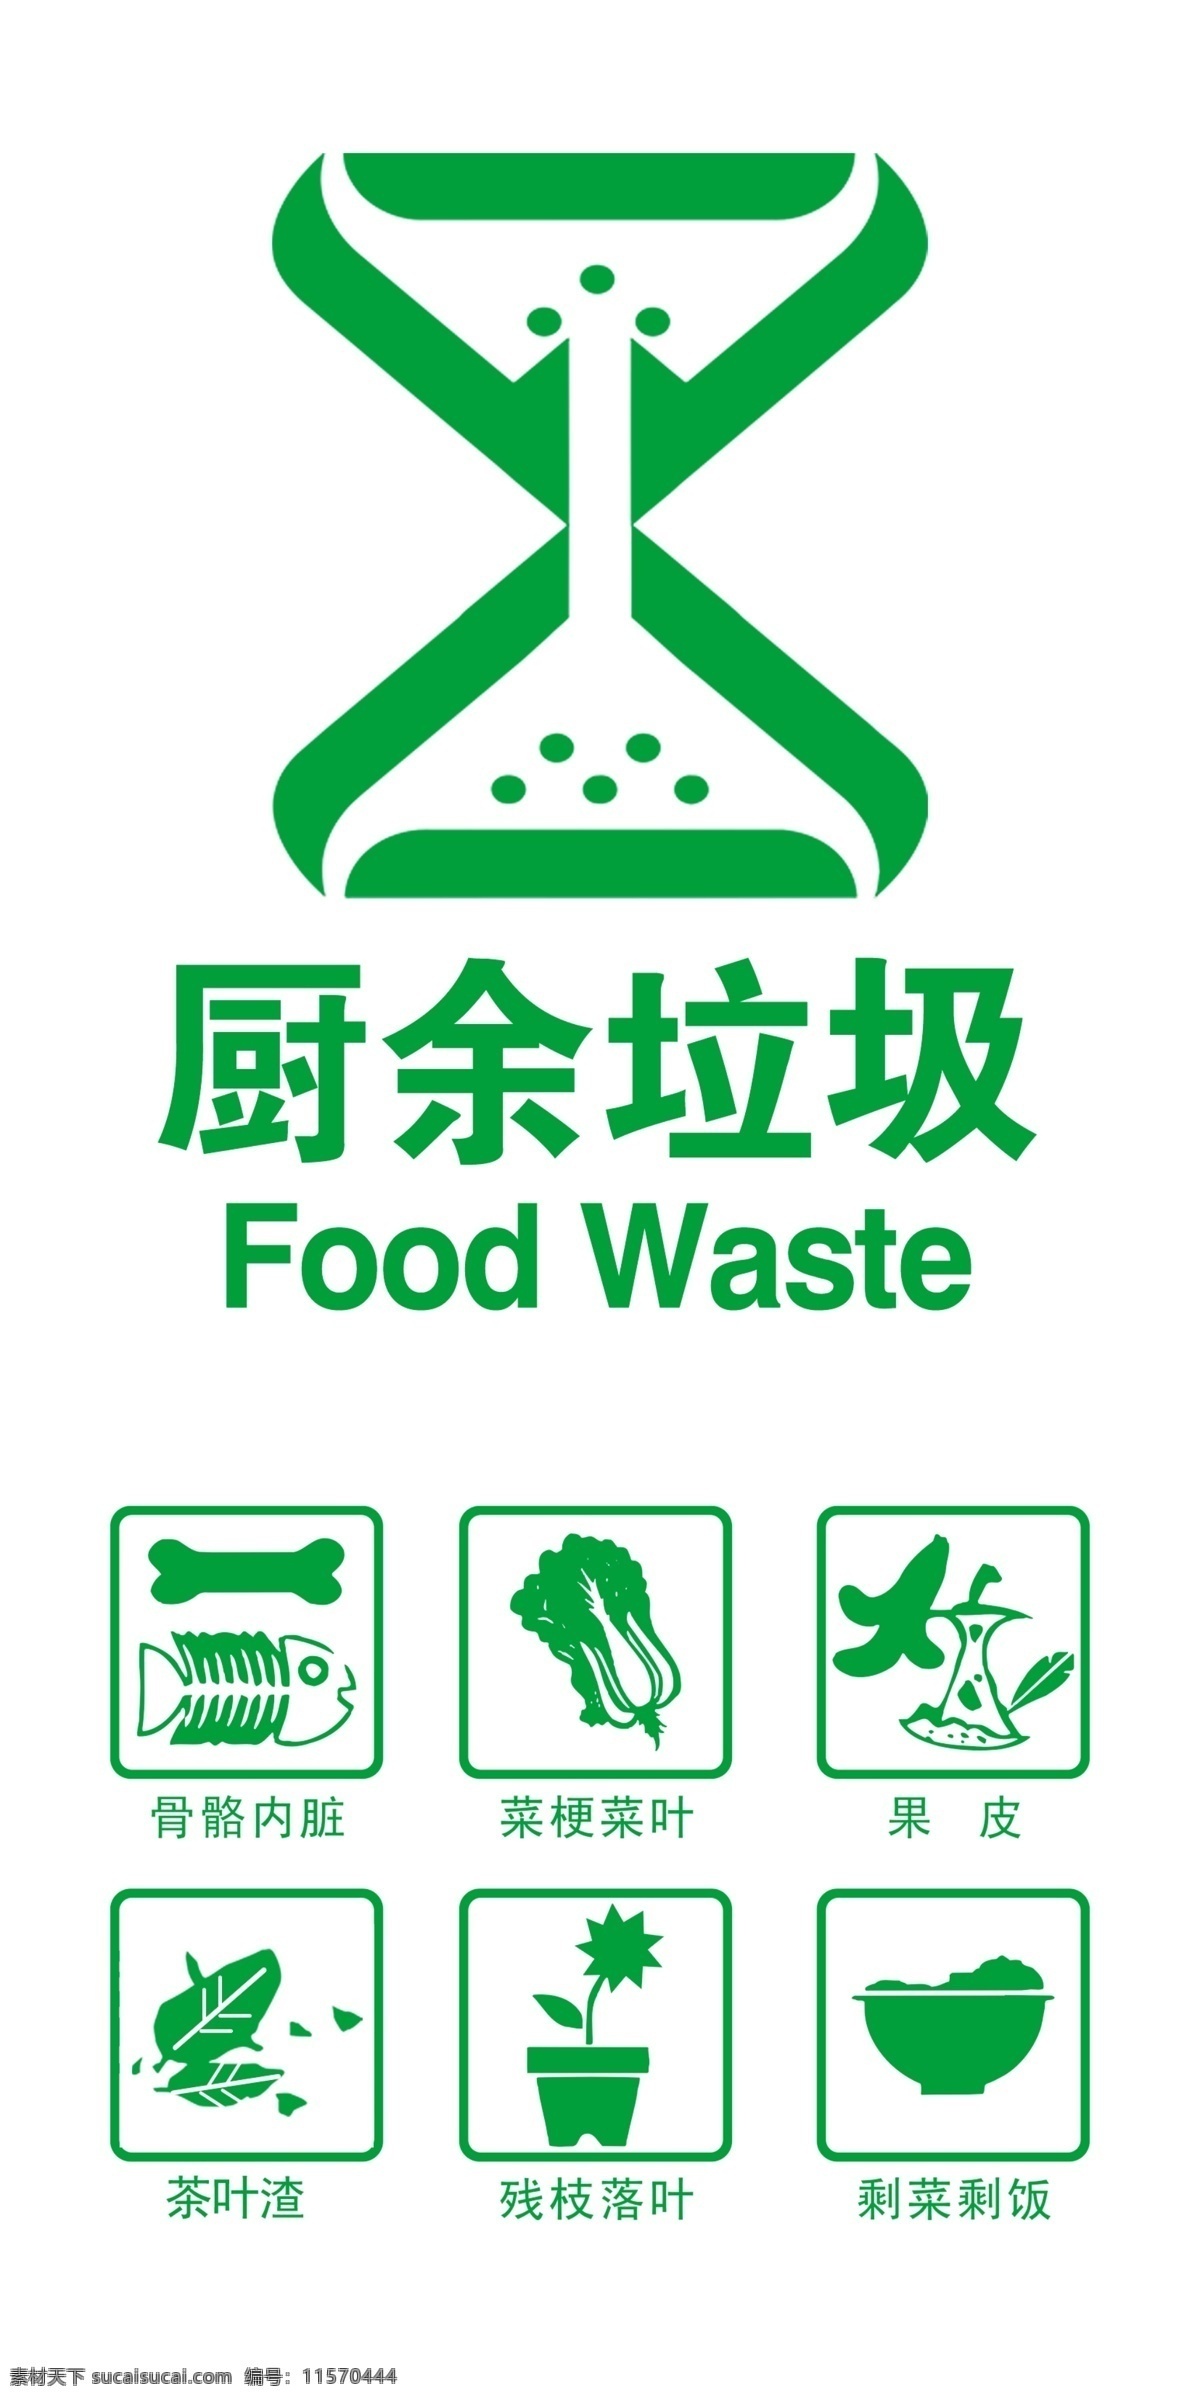 垃圾分类 厨余垃圾图片 垃圾分类海报 垃圾分类图片 垃圾分类宣传 生活垃圾分类 垃圾分类知识 垃圾分类标准